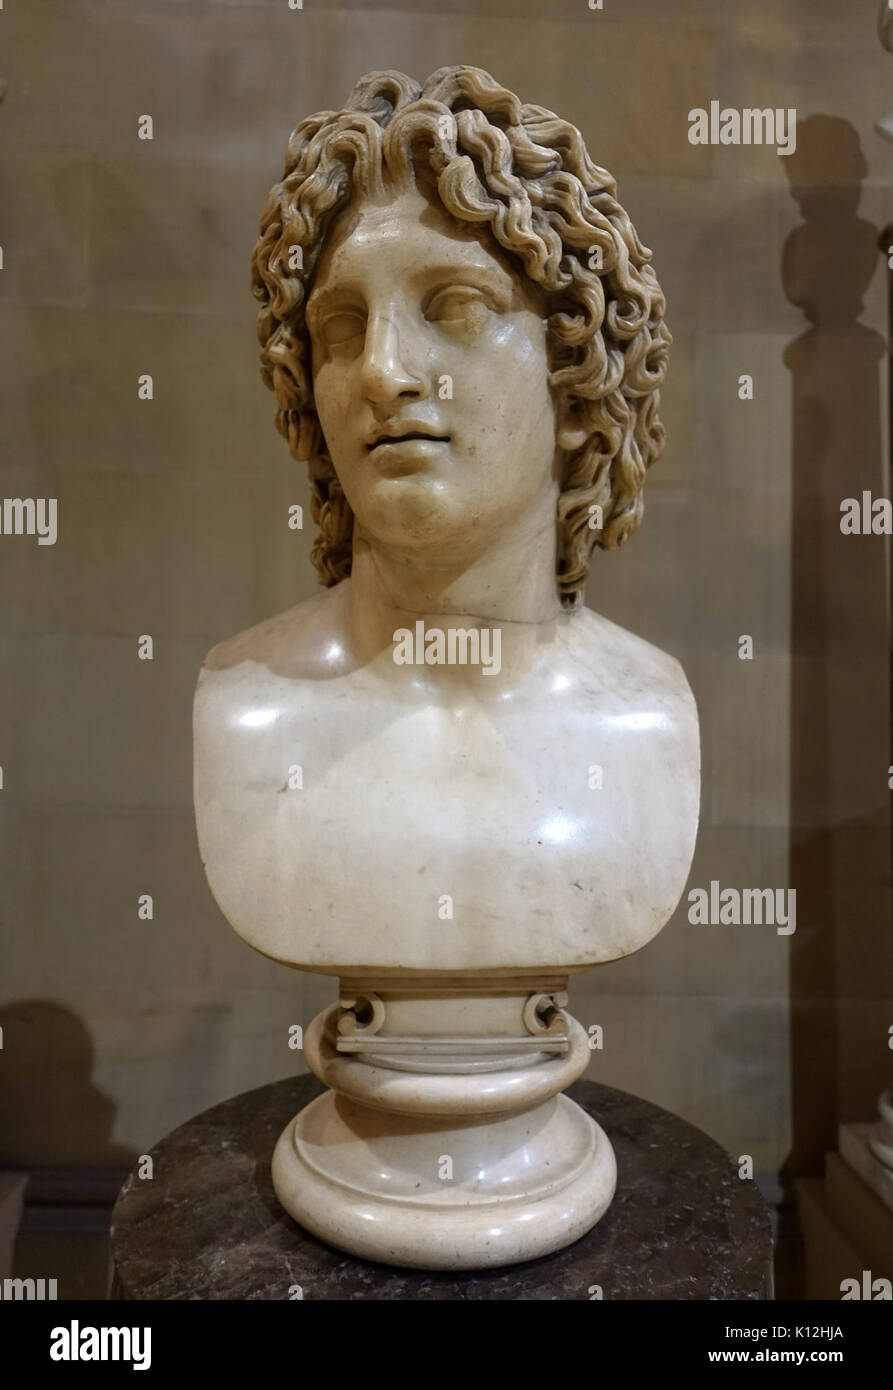 Alexander der Große, Kopie nach Leochares, Griechisch, 4. Jahrhundert v. Chr., Marmor Skulptur Galerie, Chatsworth House Derbyshire, England DSC 03489 Stockfoto